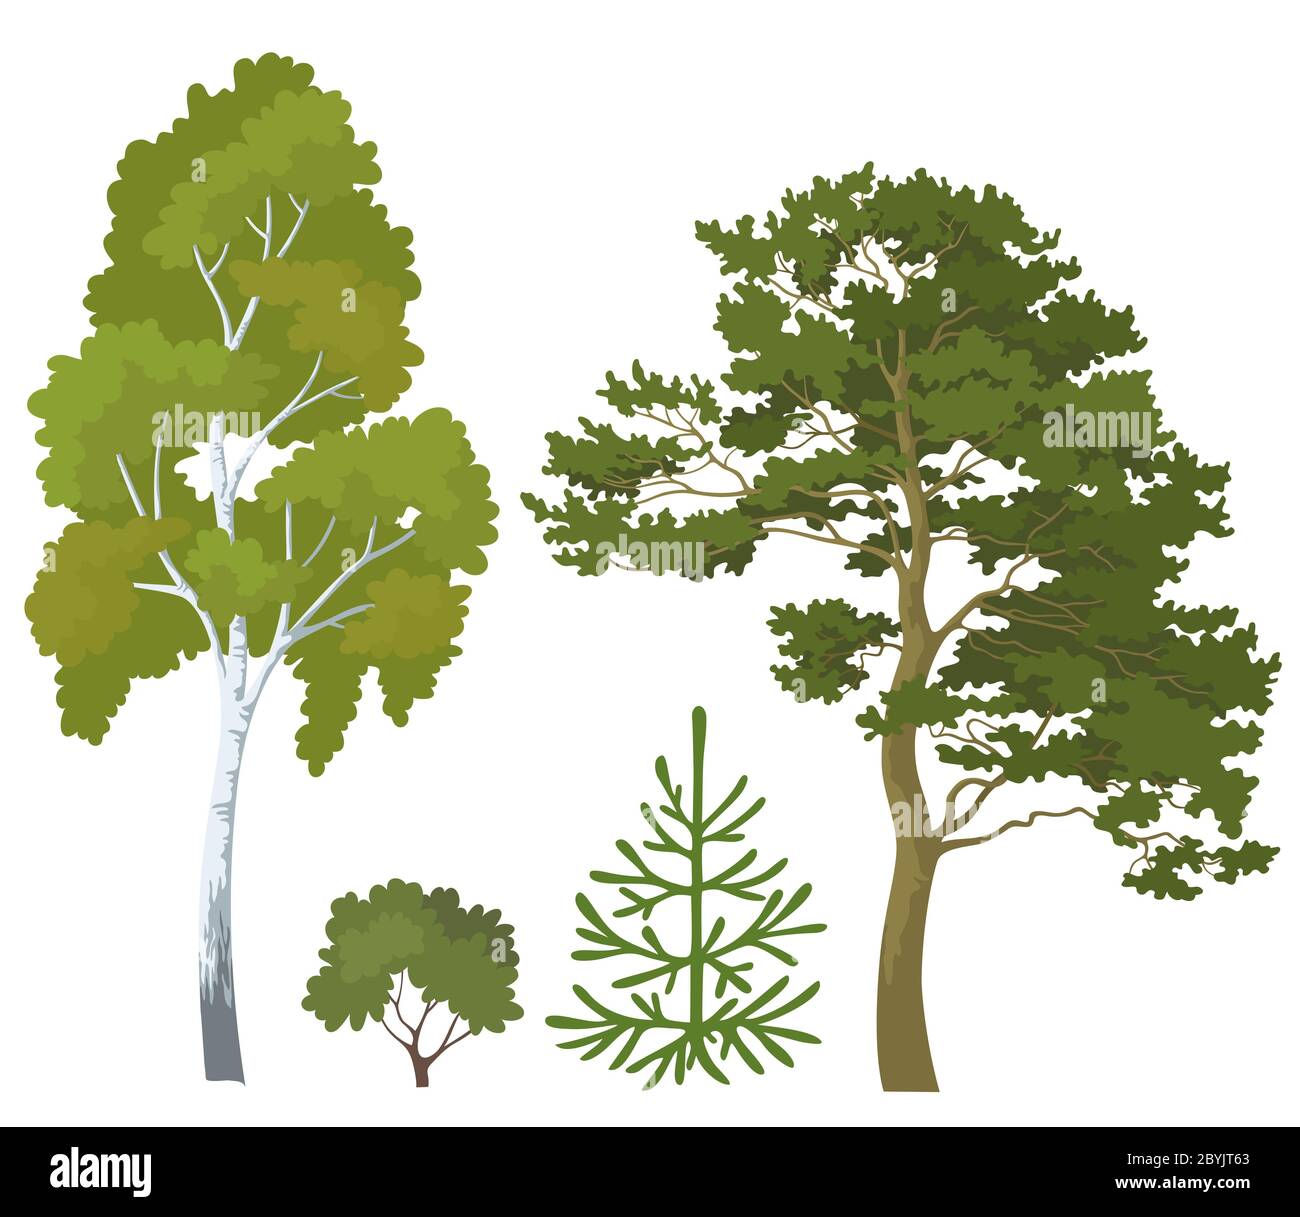 Plantas forestales Imágenes recortadas de stock - Alamy